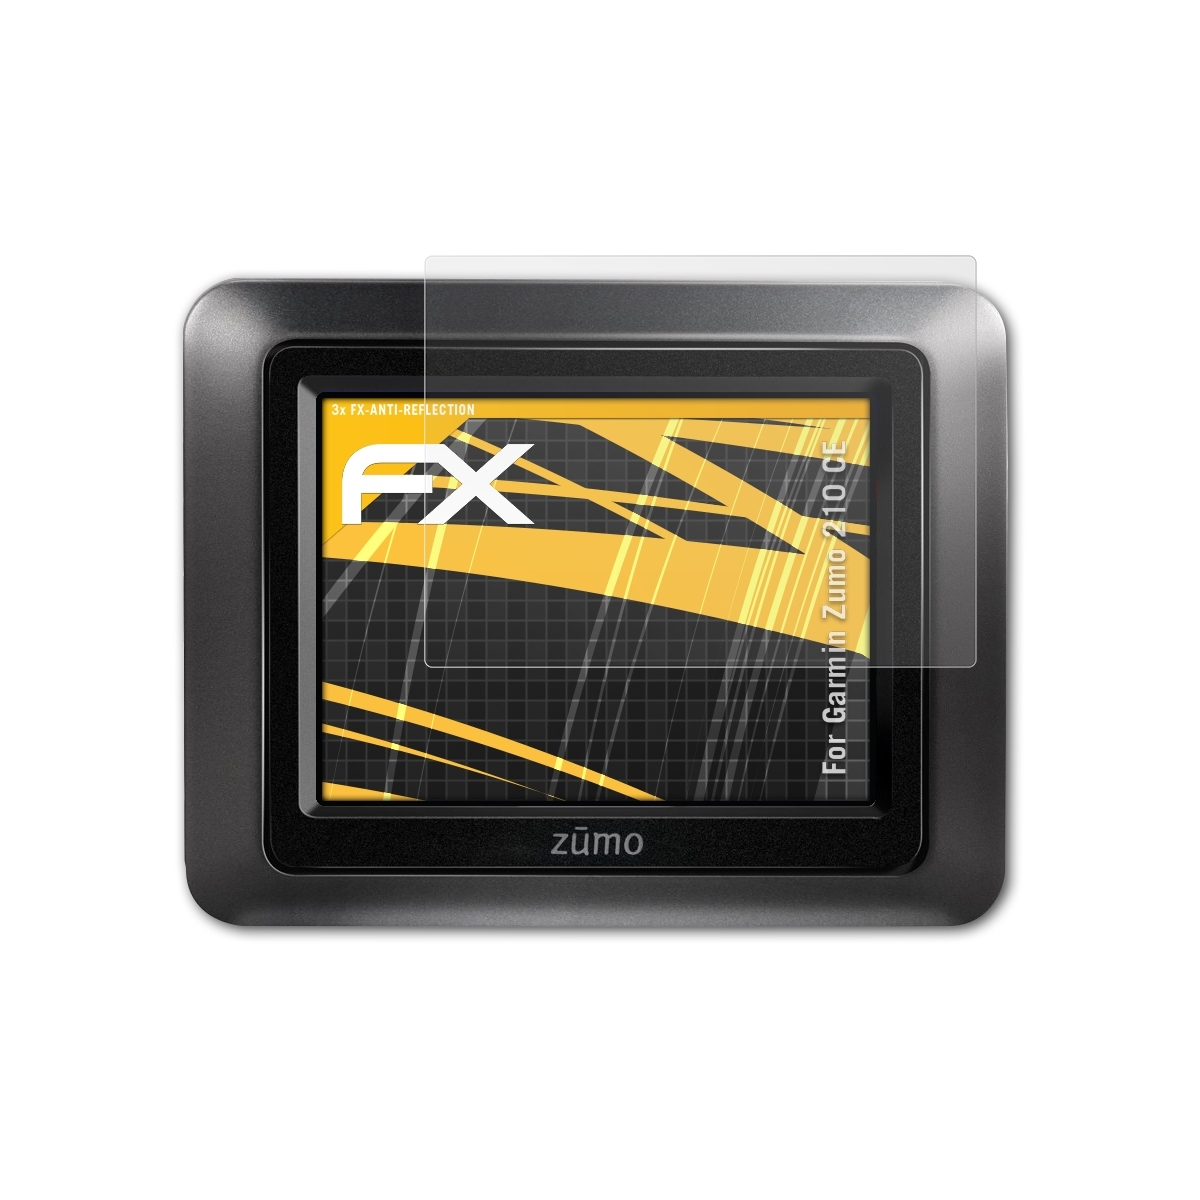 ATFOLIX Garmin Zumo 3x Displayschutz(für 210 CE) FX-Antireflex